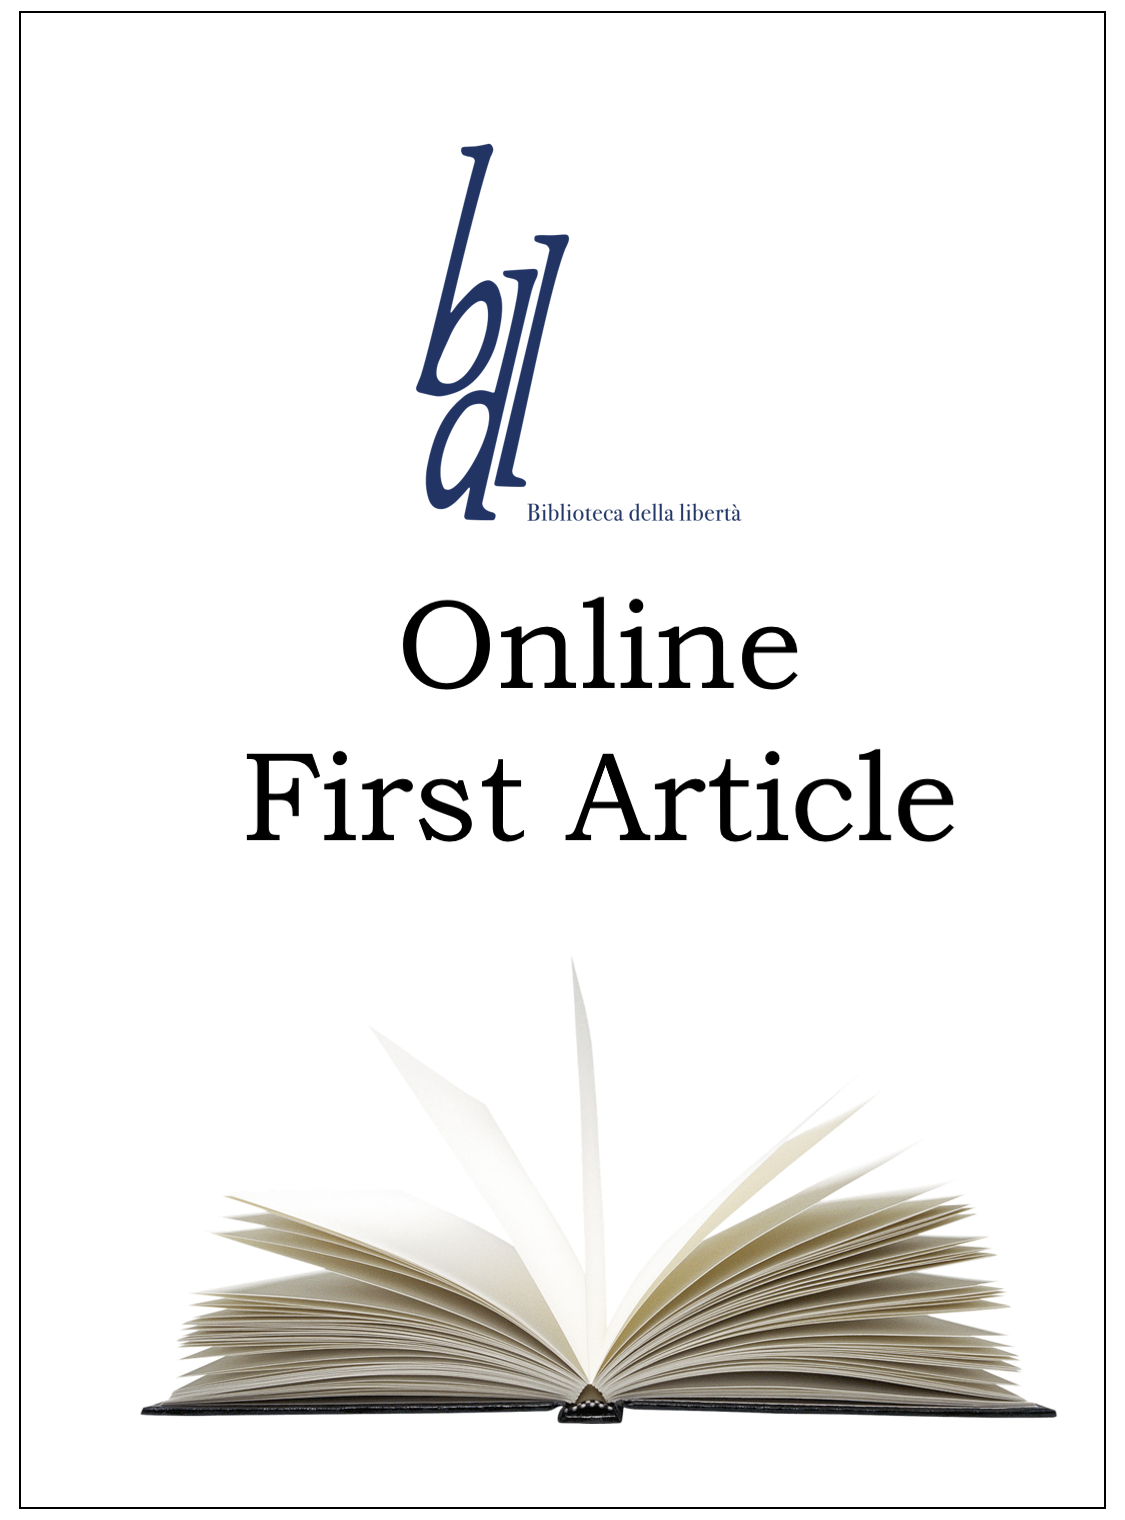 Bdl online first: quattro articoli in anteprima